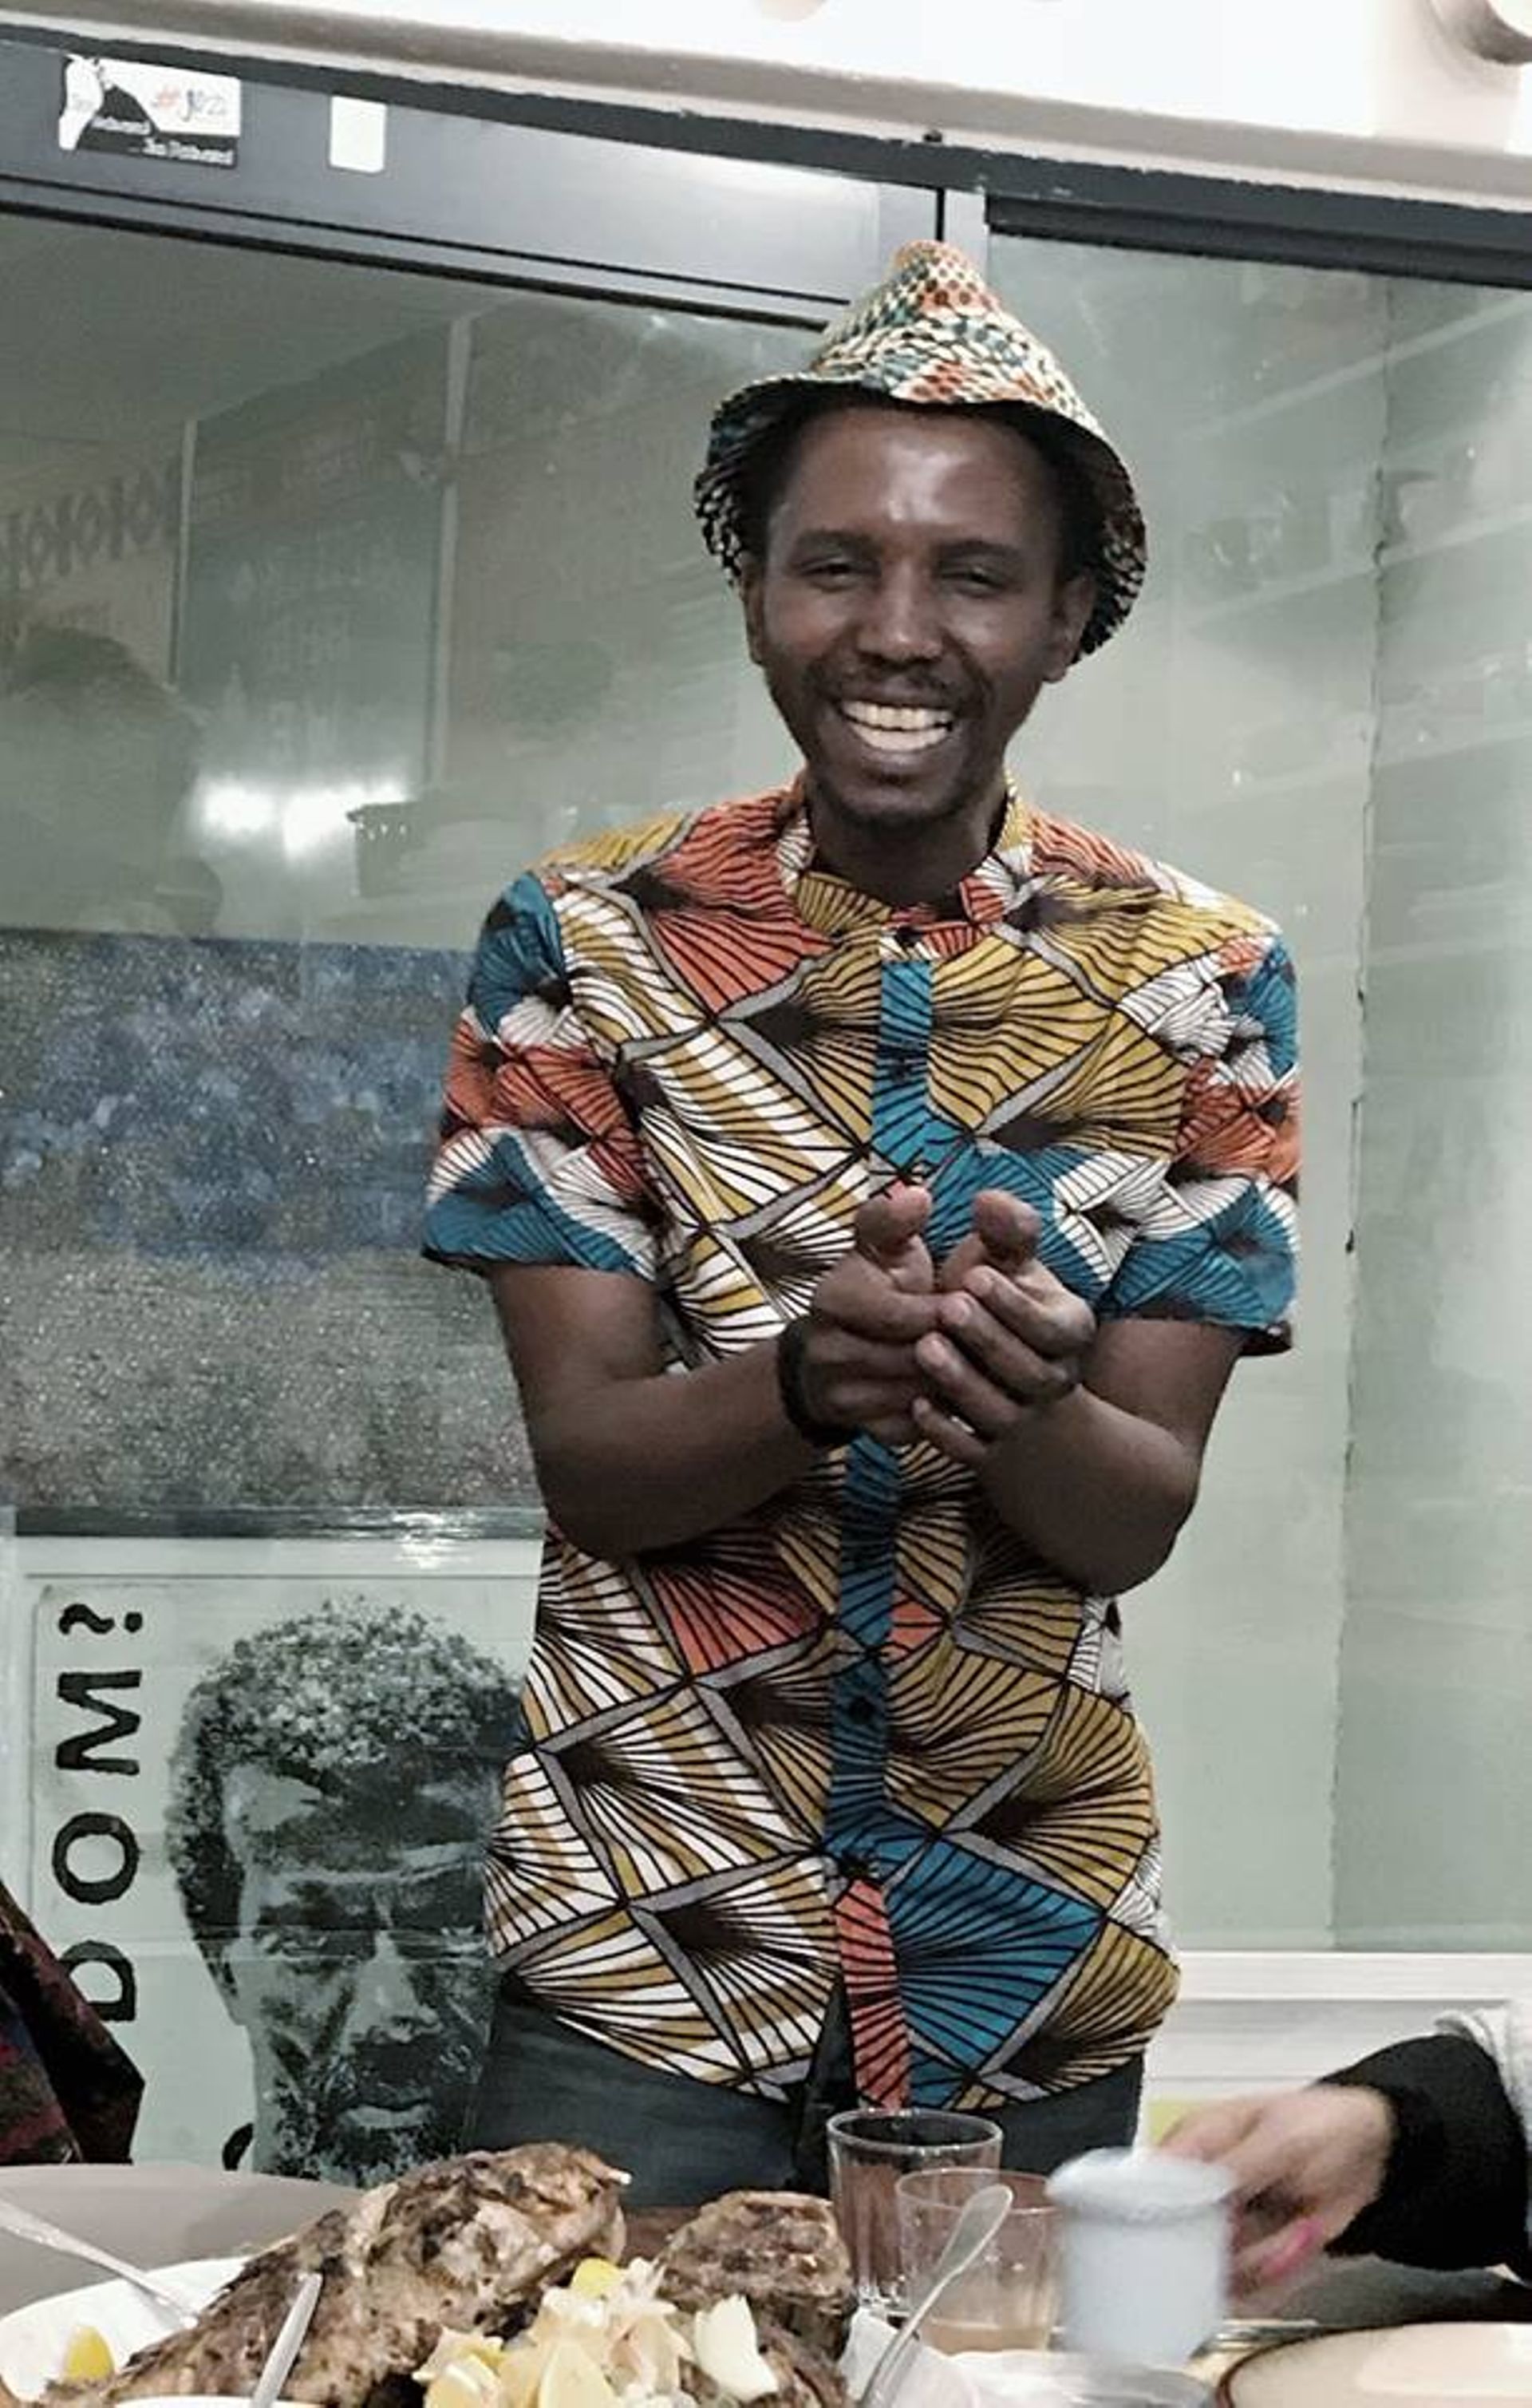 Voyage de gastronomie africaine avec le "prince de Yeoville", le "Matonge" de Johannesburg